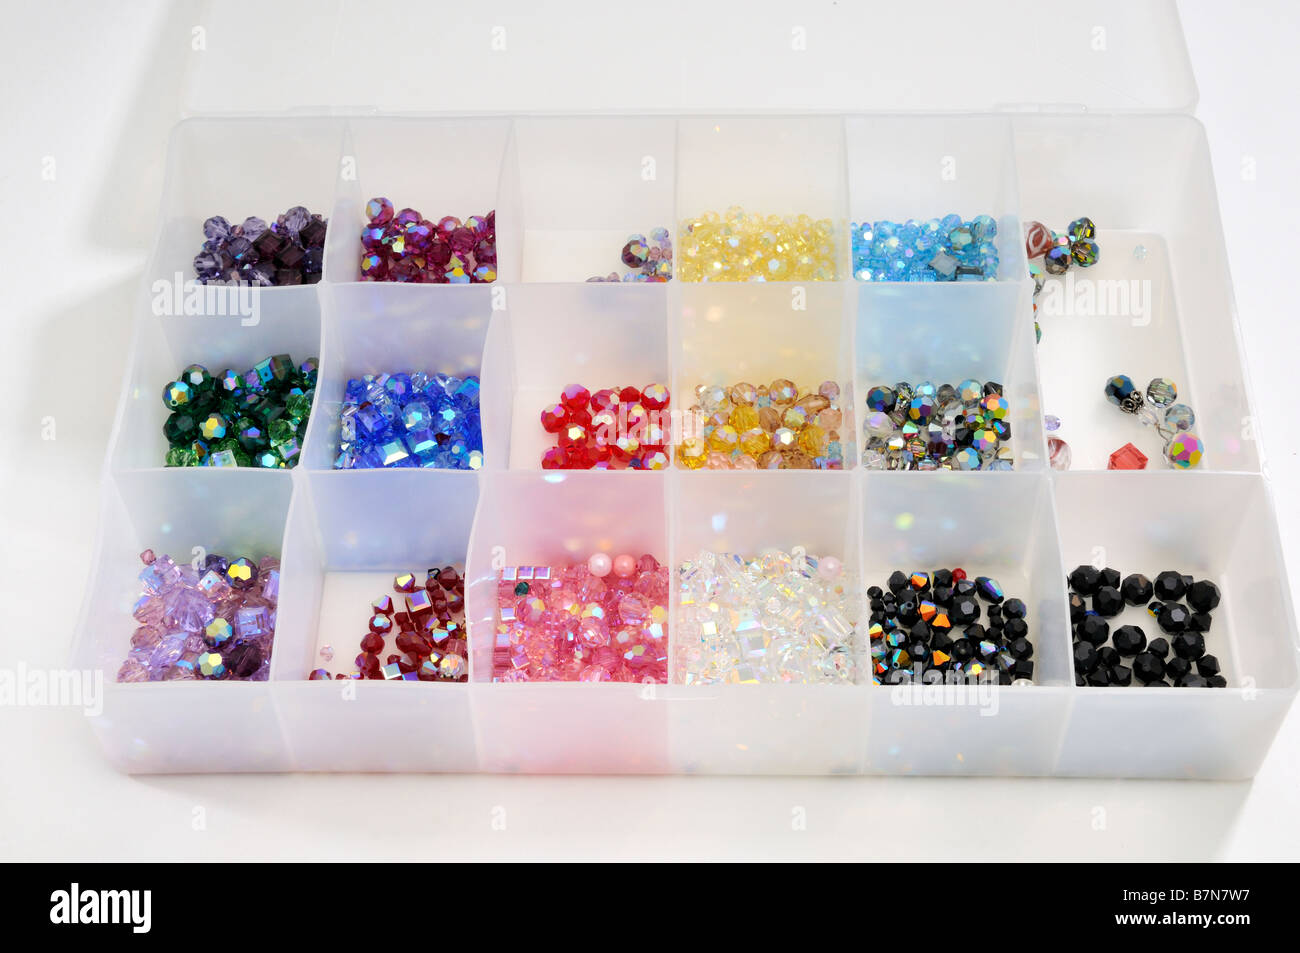 Eine partitionierte Kunststoff Behälter mit Swarovski Perlen Schmuck. USA  Stockfotografie - Alamy